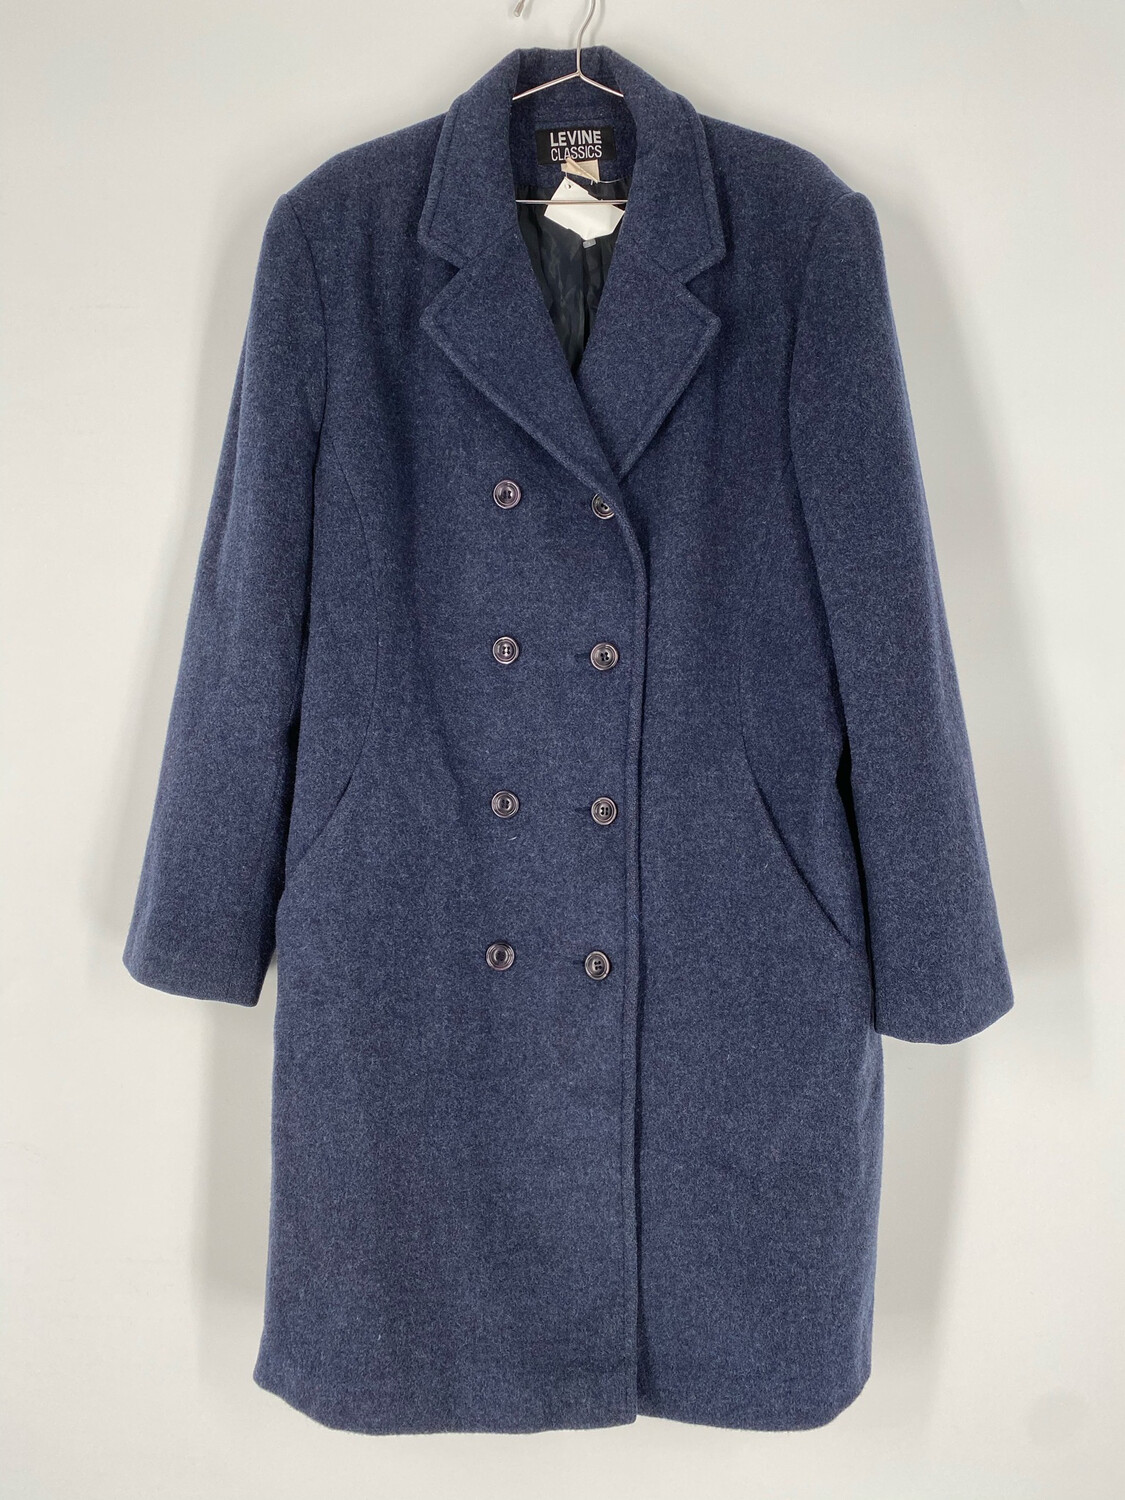 Levine Classics Blue Wool Mid Length Pea Coat Size L